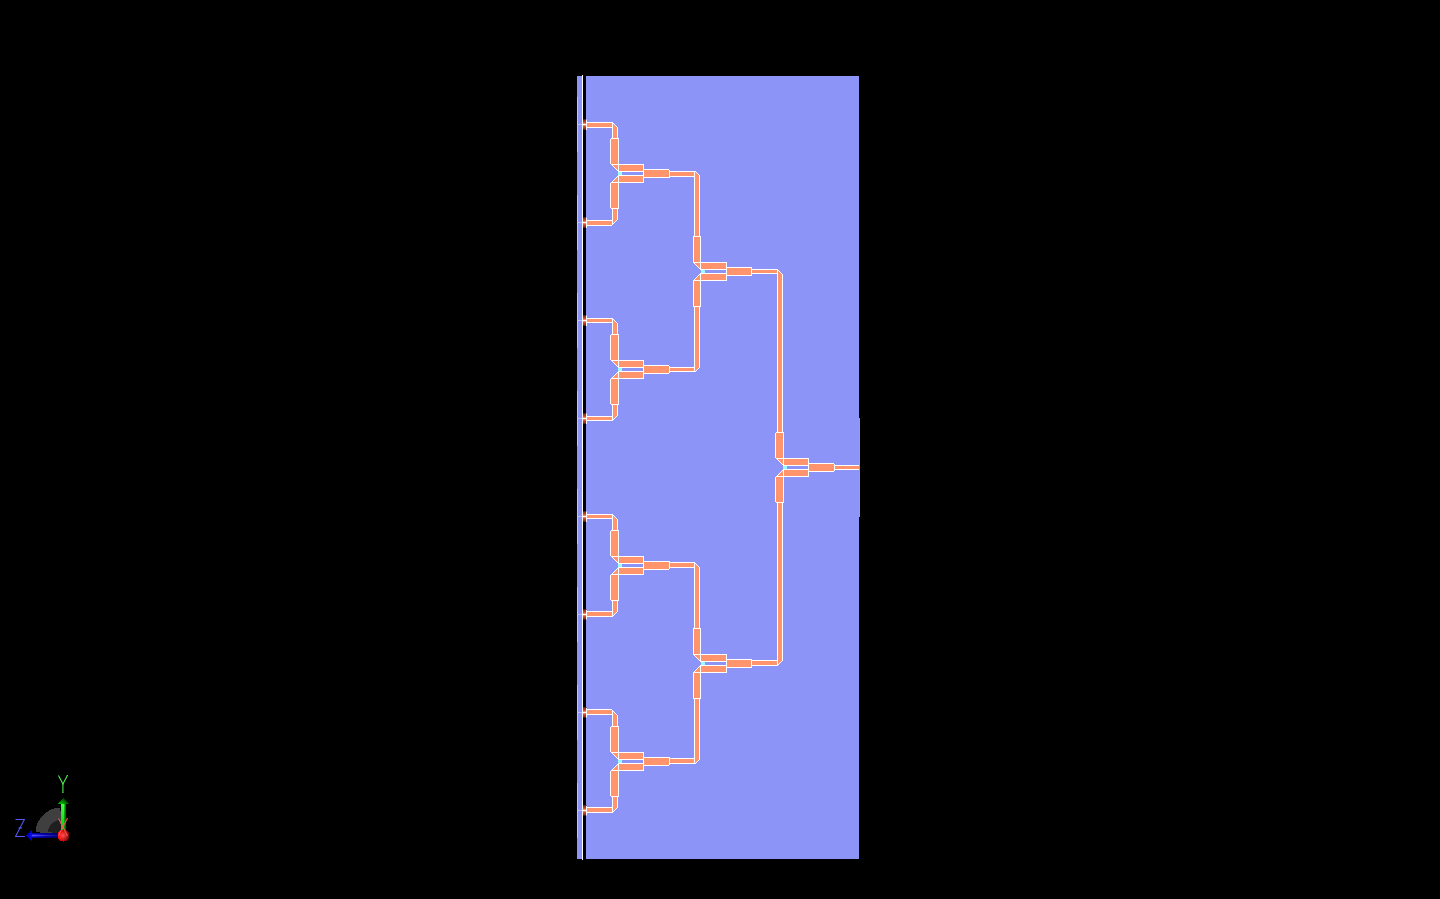 图 9：所示为威尔金森功率分配器的侧视图，清楚地显示了分配信号的三个阶段。